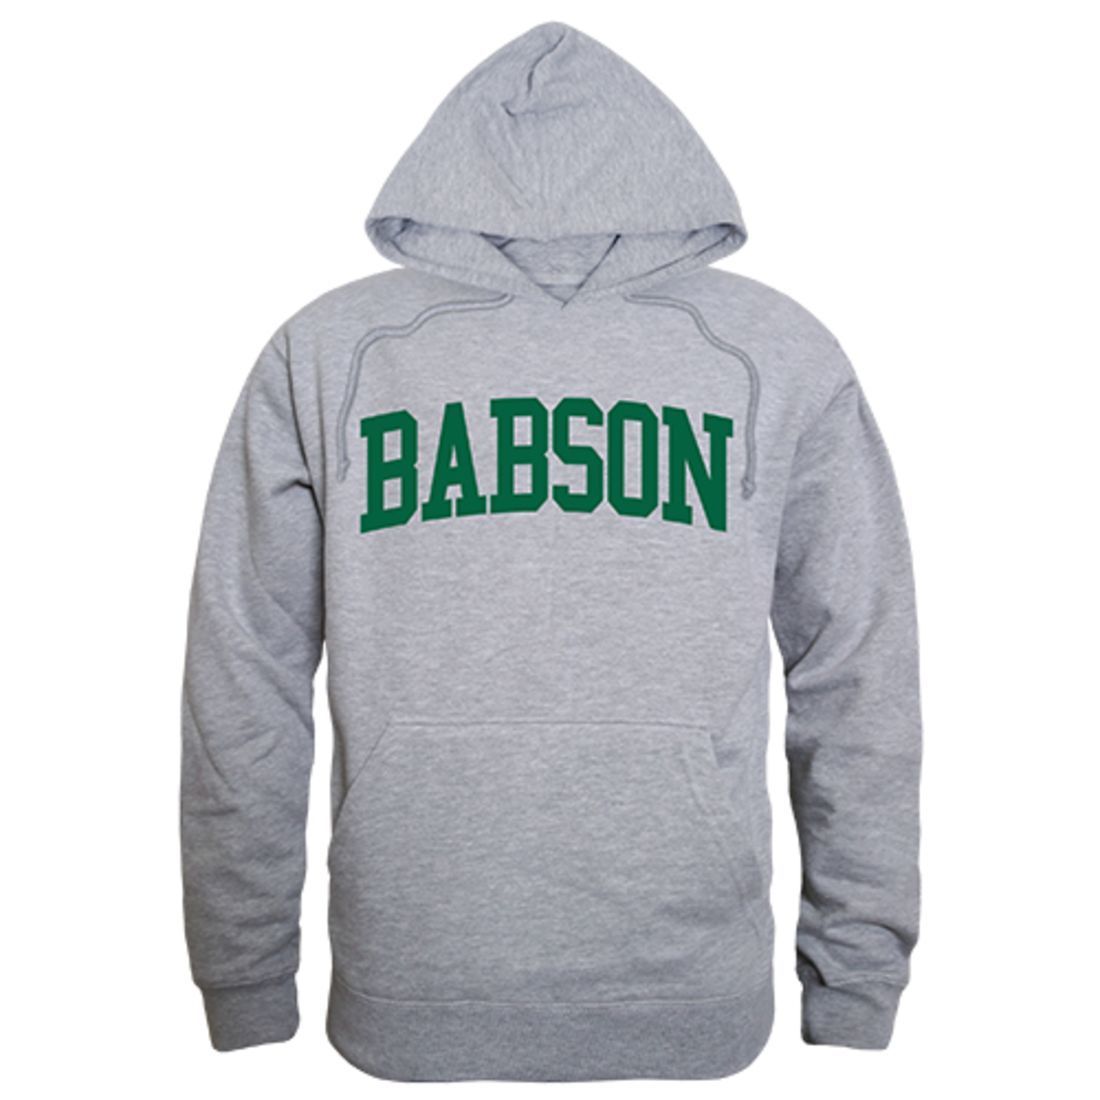 Babson College Game Day Hoodie Sweatshirt Heather Grey-Campus-Wardrobe